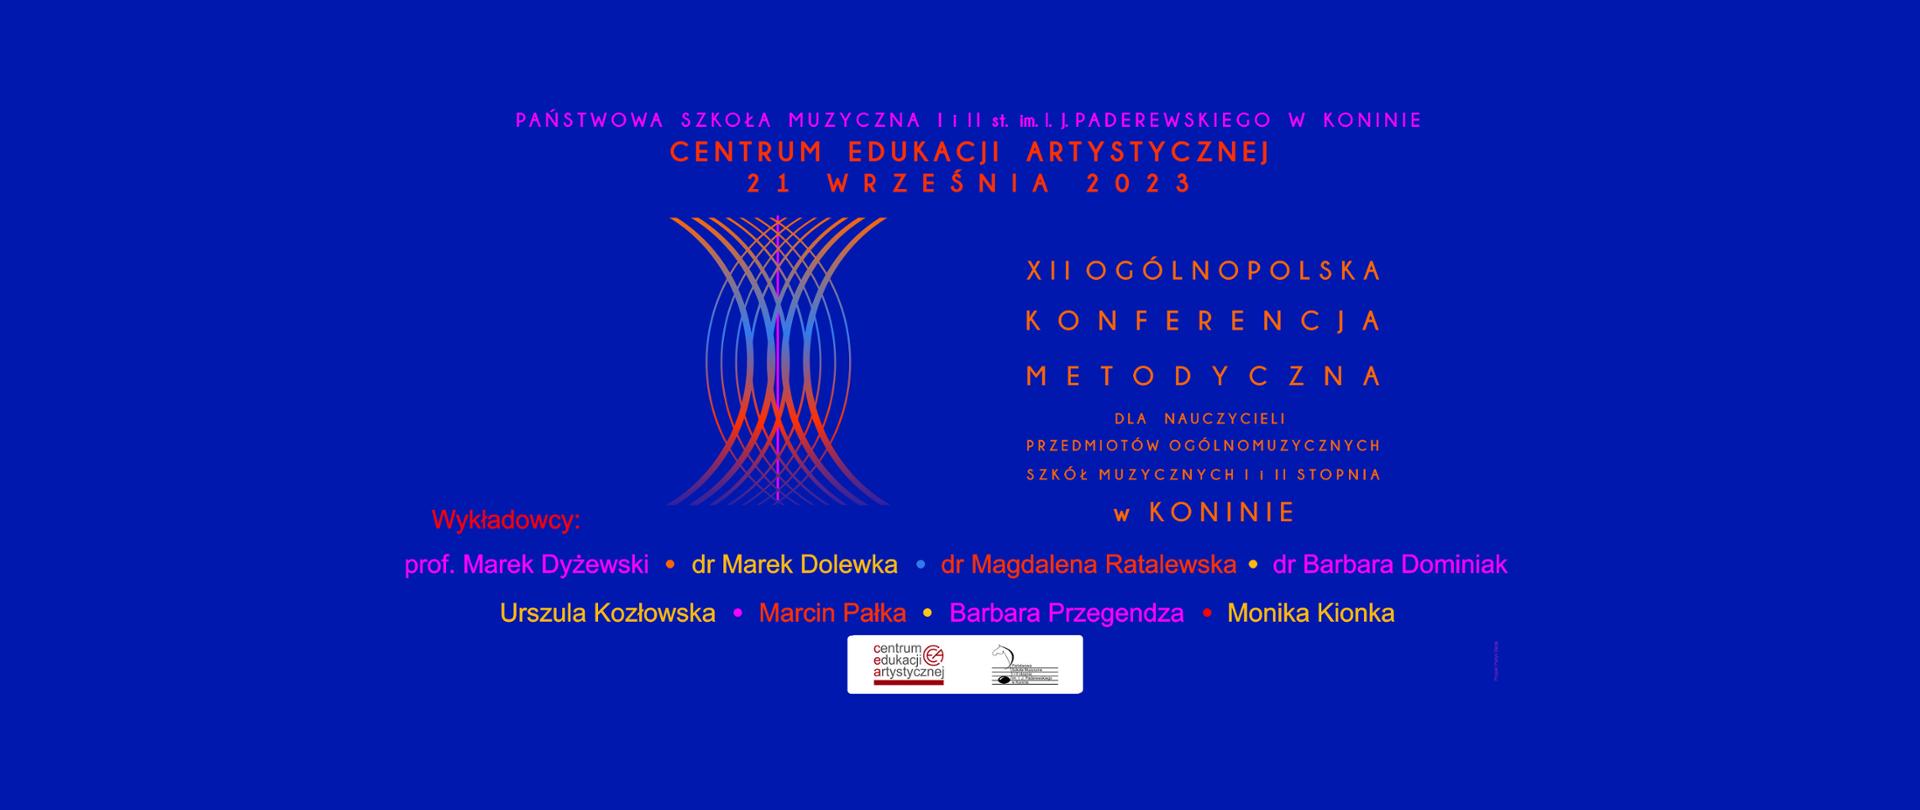 Na niebieskim tle szczegóły wydarzenia, nazwiska prowadzących, grafika przedstawiamąca fale dźwiękowe i logo CEA i PSM w Koninie